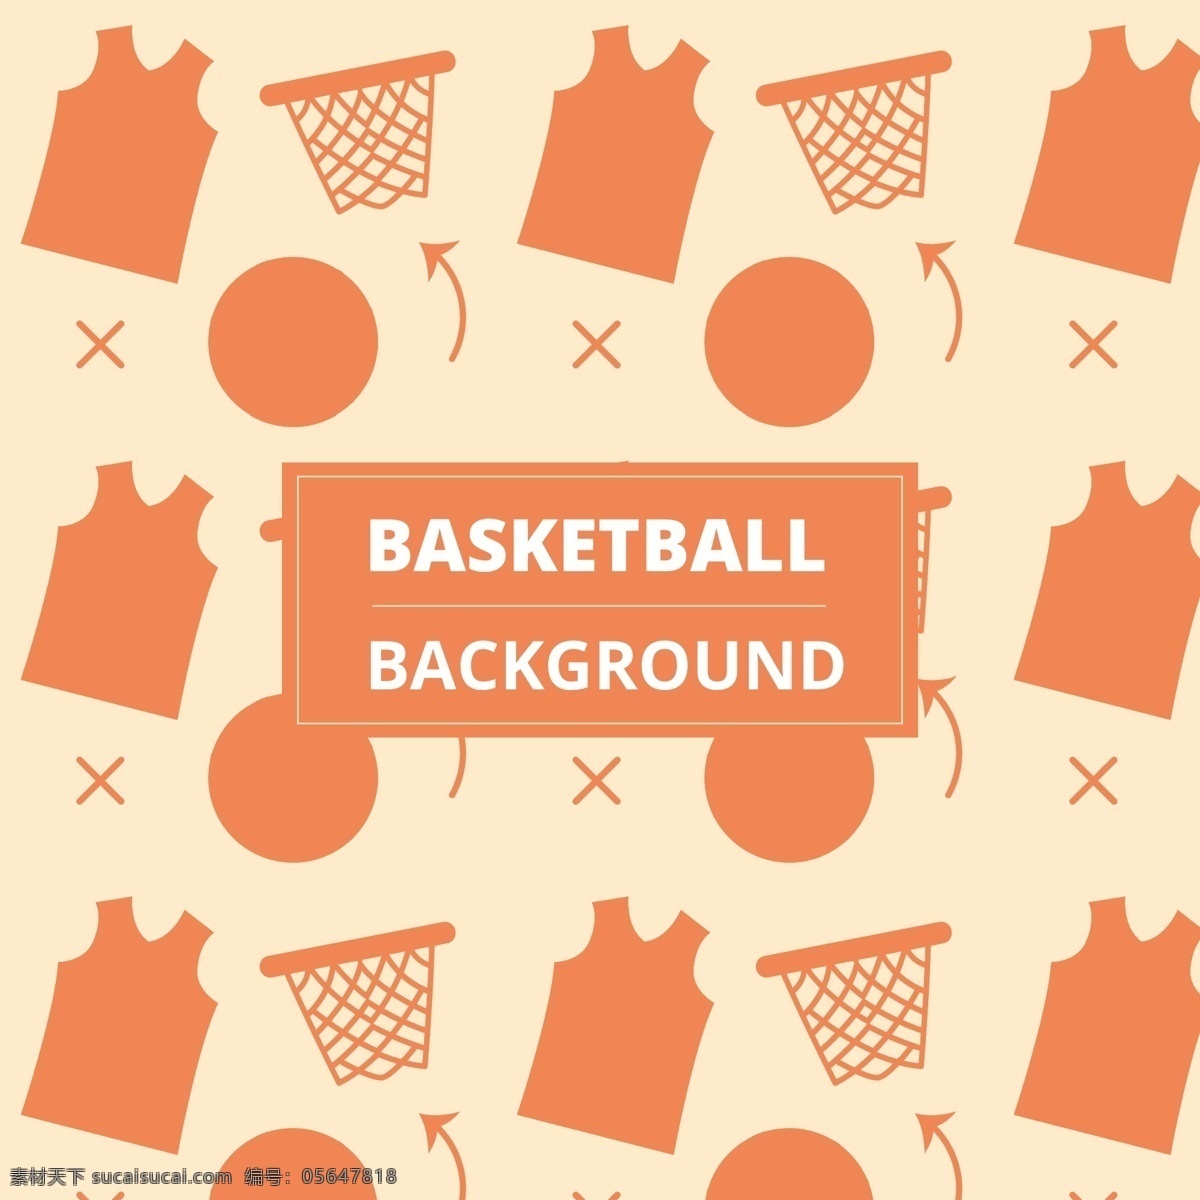 篮球相关 篮球 矢量篮球 篮球运动 球类 球 篮球比赛海报 篮球海报 篮球宣传 运动海报 室内运动 奥运会 运动健身 体育运动 篮球馆 篮球场 篮球图表 篮球标志 卡通篮球 篮球服 卡通设计